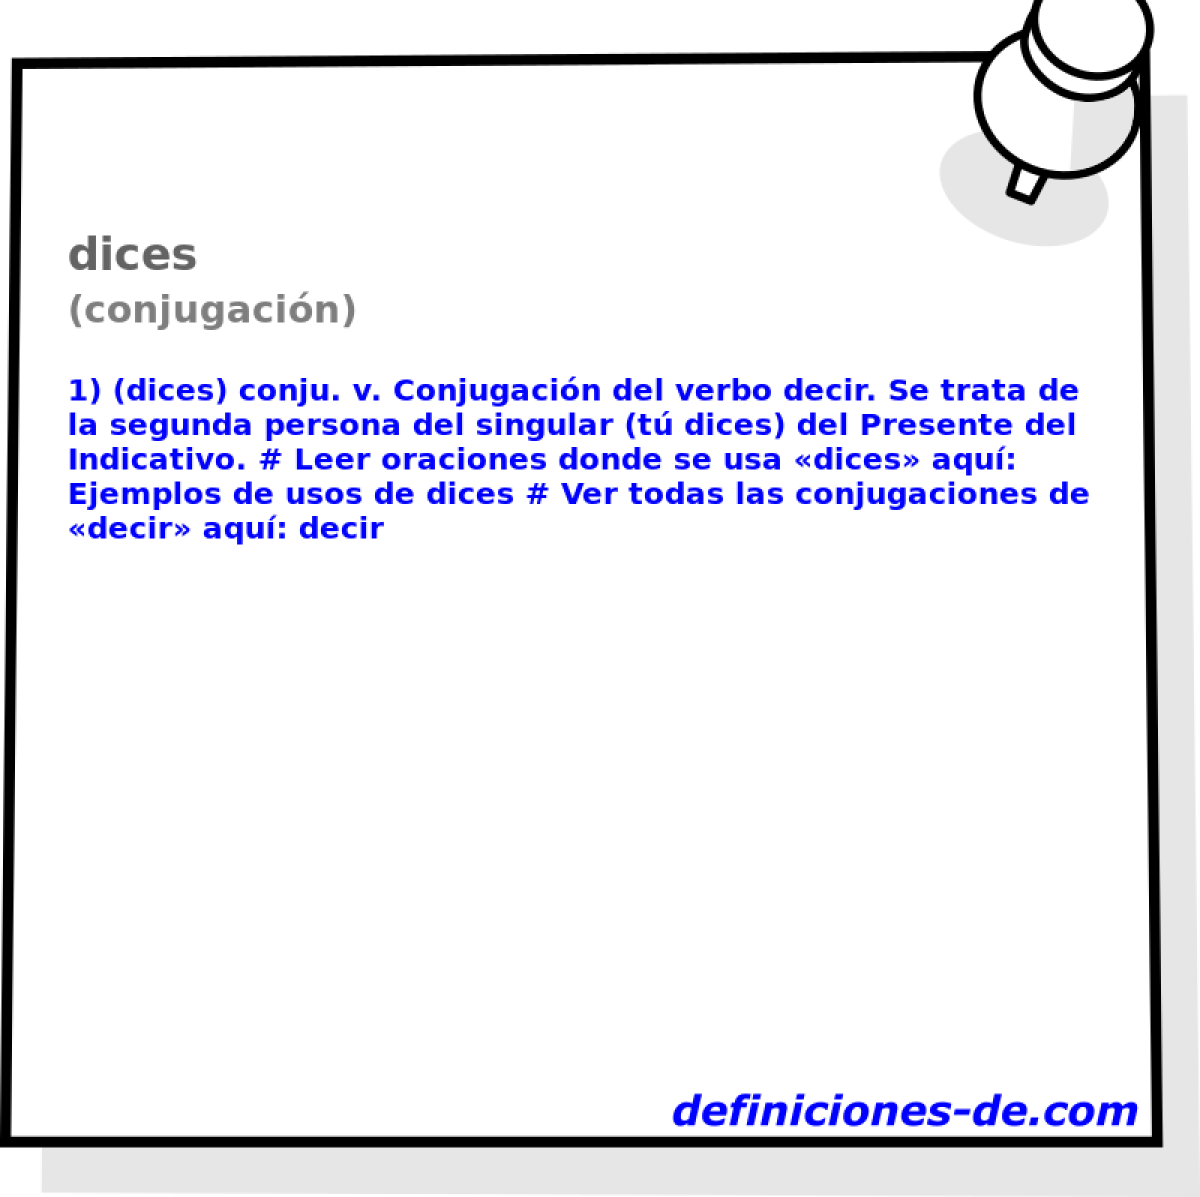 dices (conjugacin)